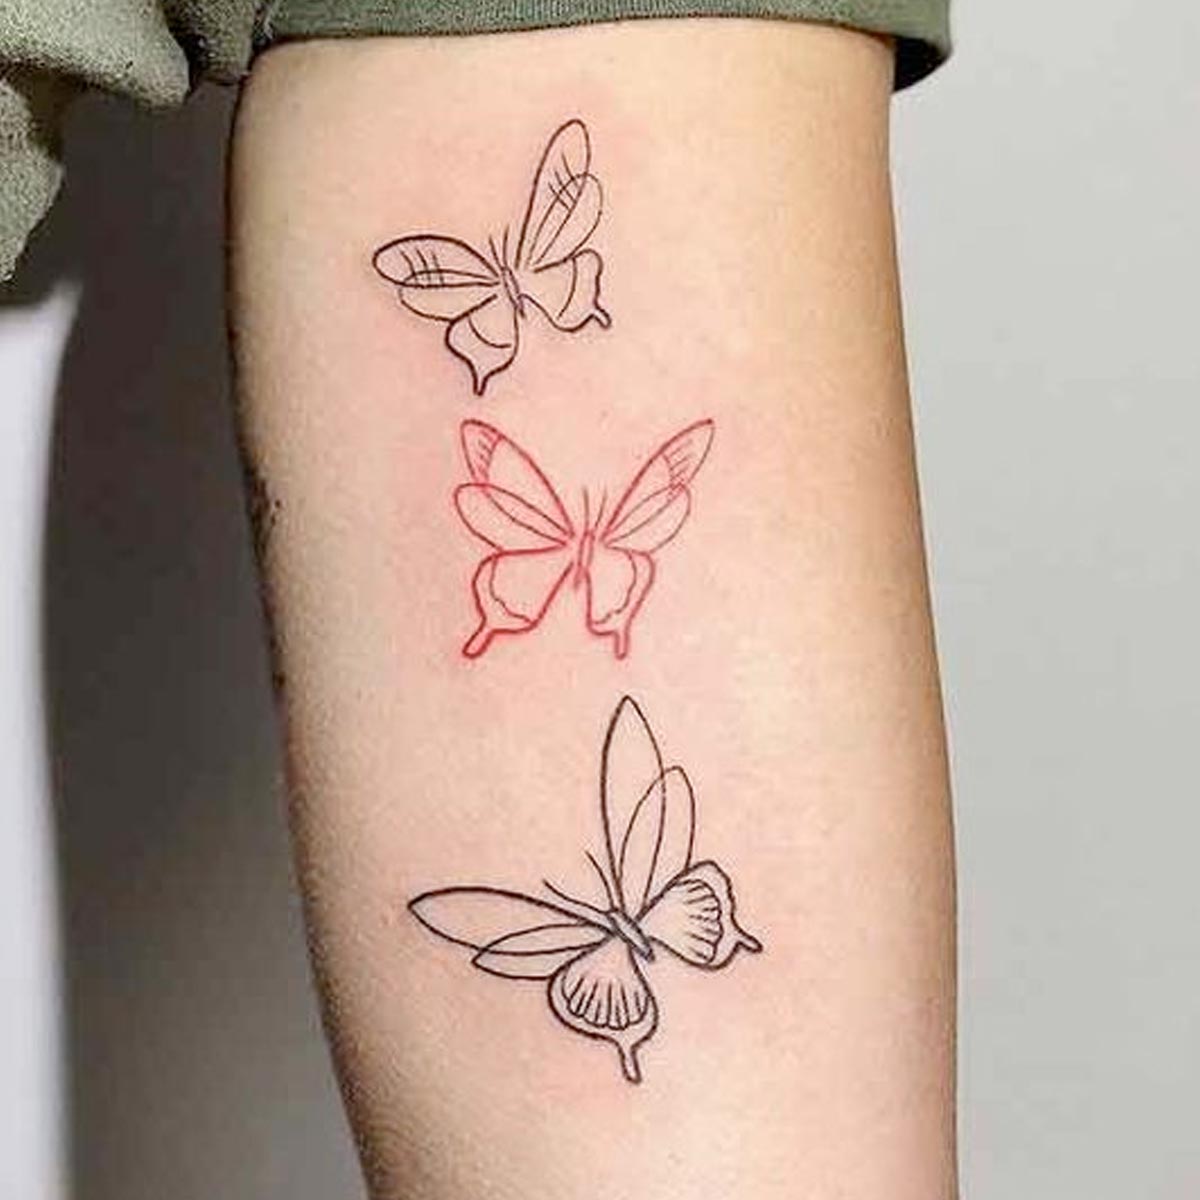 Tatuaggio farfalla stilizzata